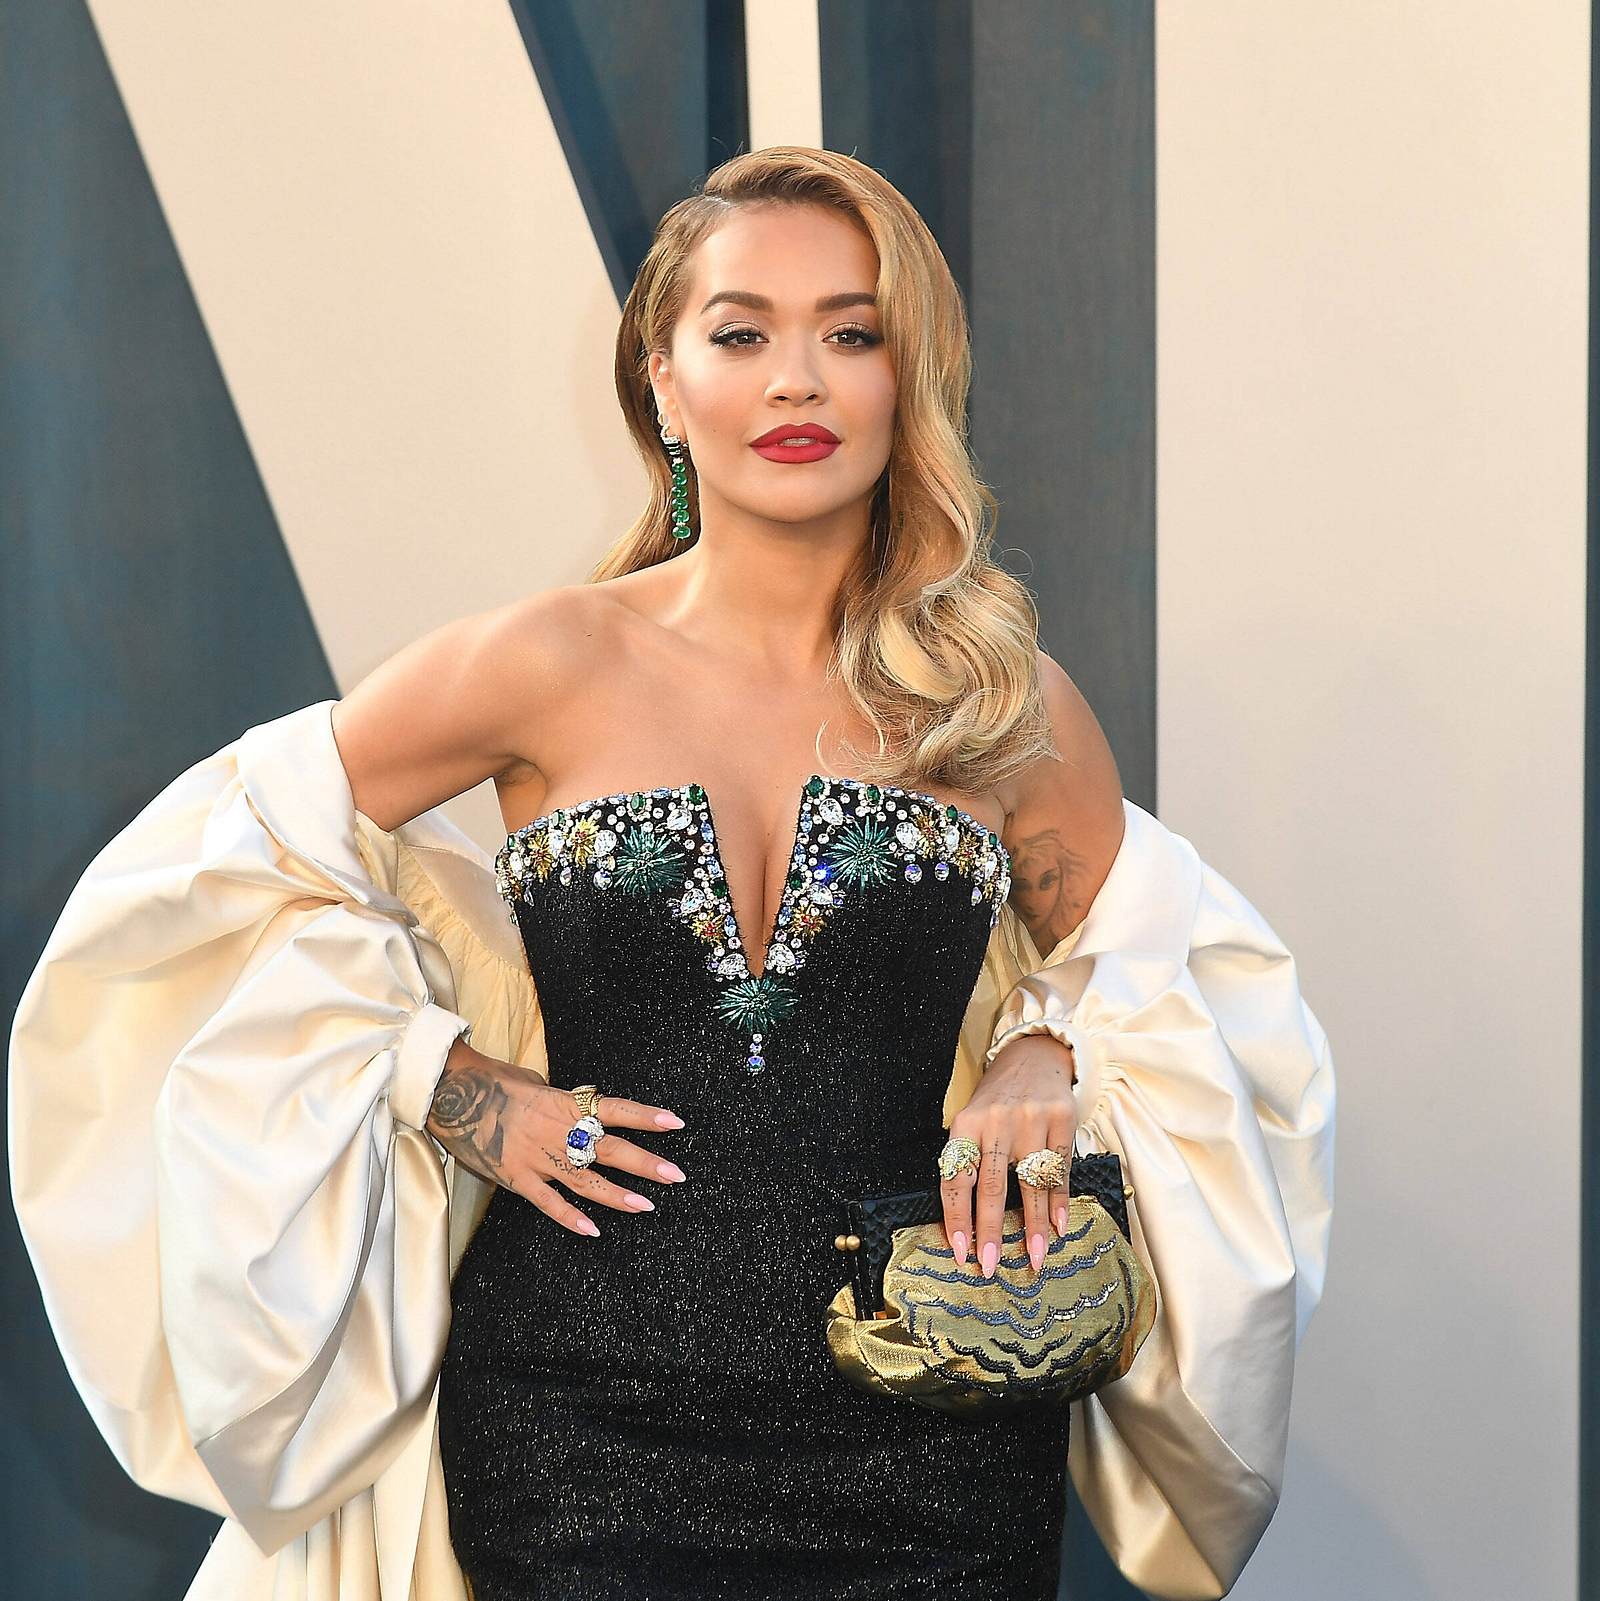 Starreifes Haar-Styling zum Discountpreis: Mit den günstigen Stylingtools  von Superstar Rita Ora | Wunderweib | Haarpflege & Haarstyling